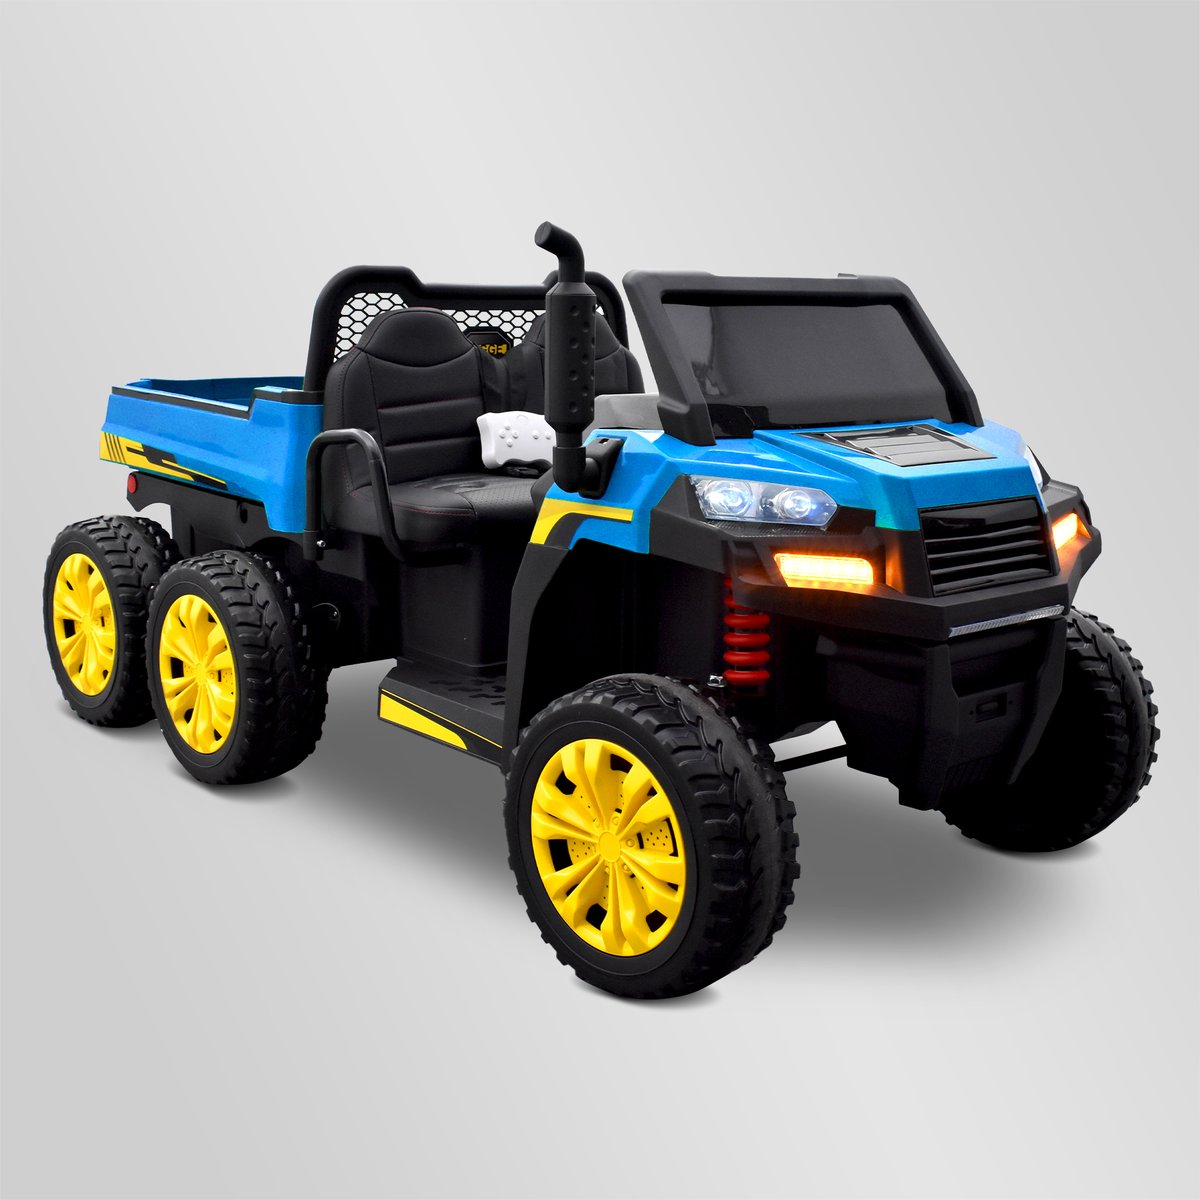 Tracteur électrique enfant 6x6 avec benne basculante | Smallmx - Dirt bike,  Pit bike, Quads, Minimoto